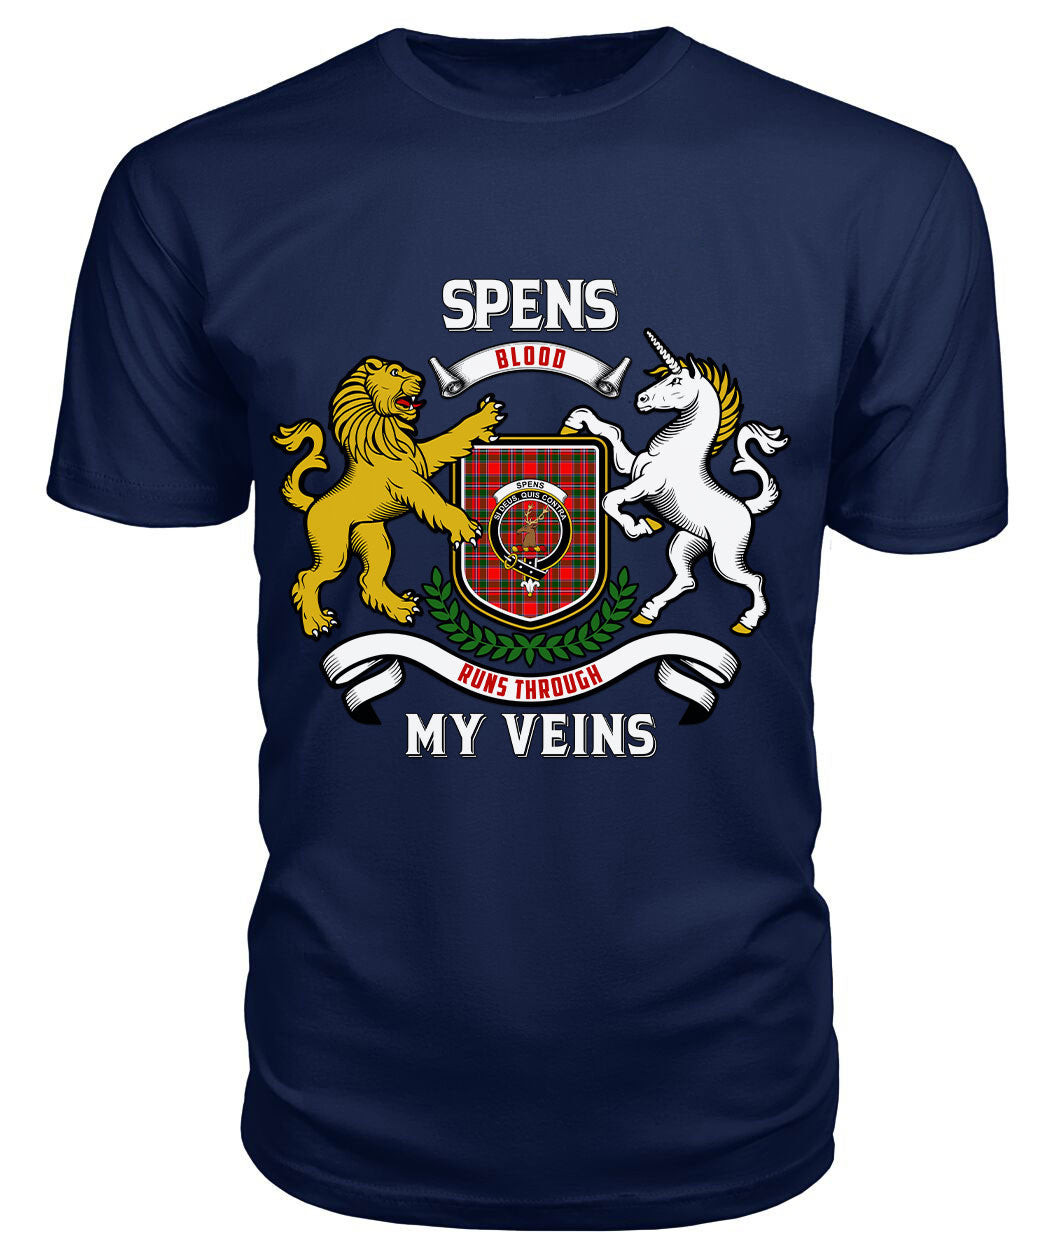 Spens (or Spence) Tartan Crest 2D T-shirt - Blood Runs Through My Veins Style